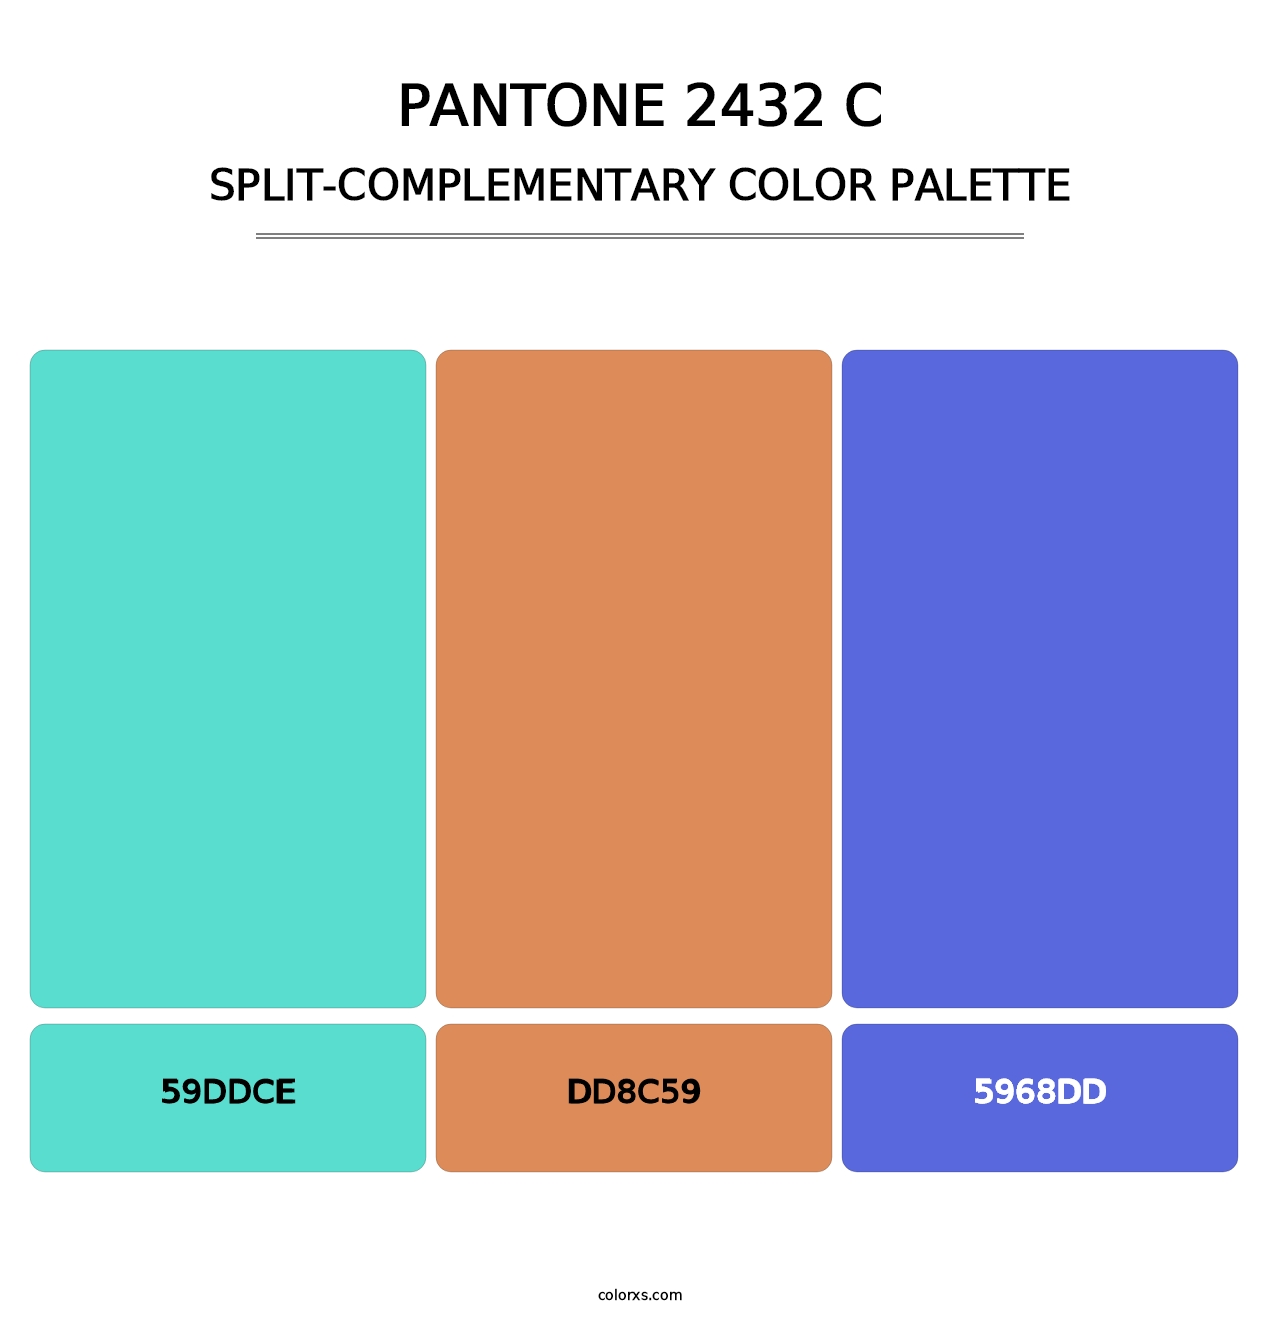 PANTONE 2432 C - Split-Complementary Color Palette